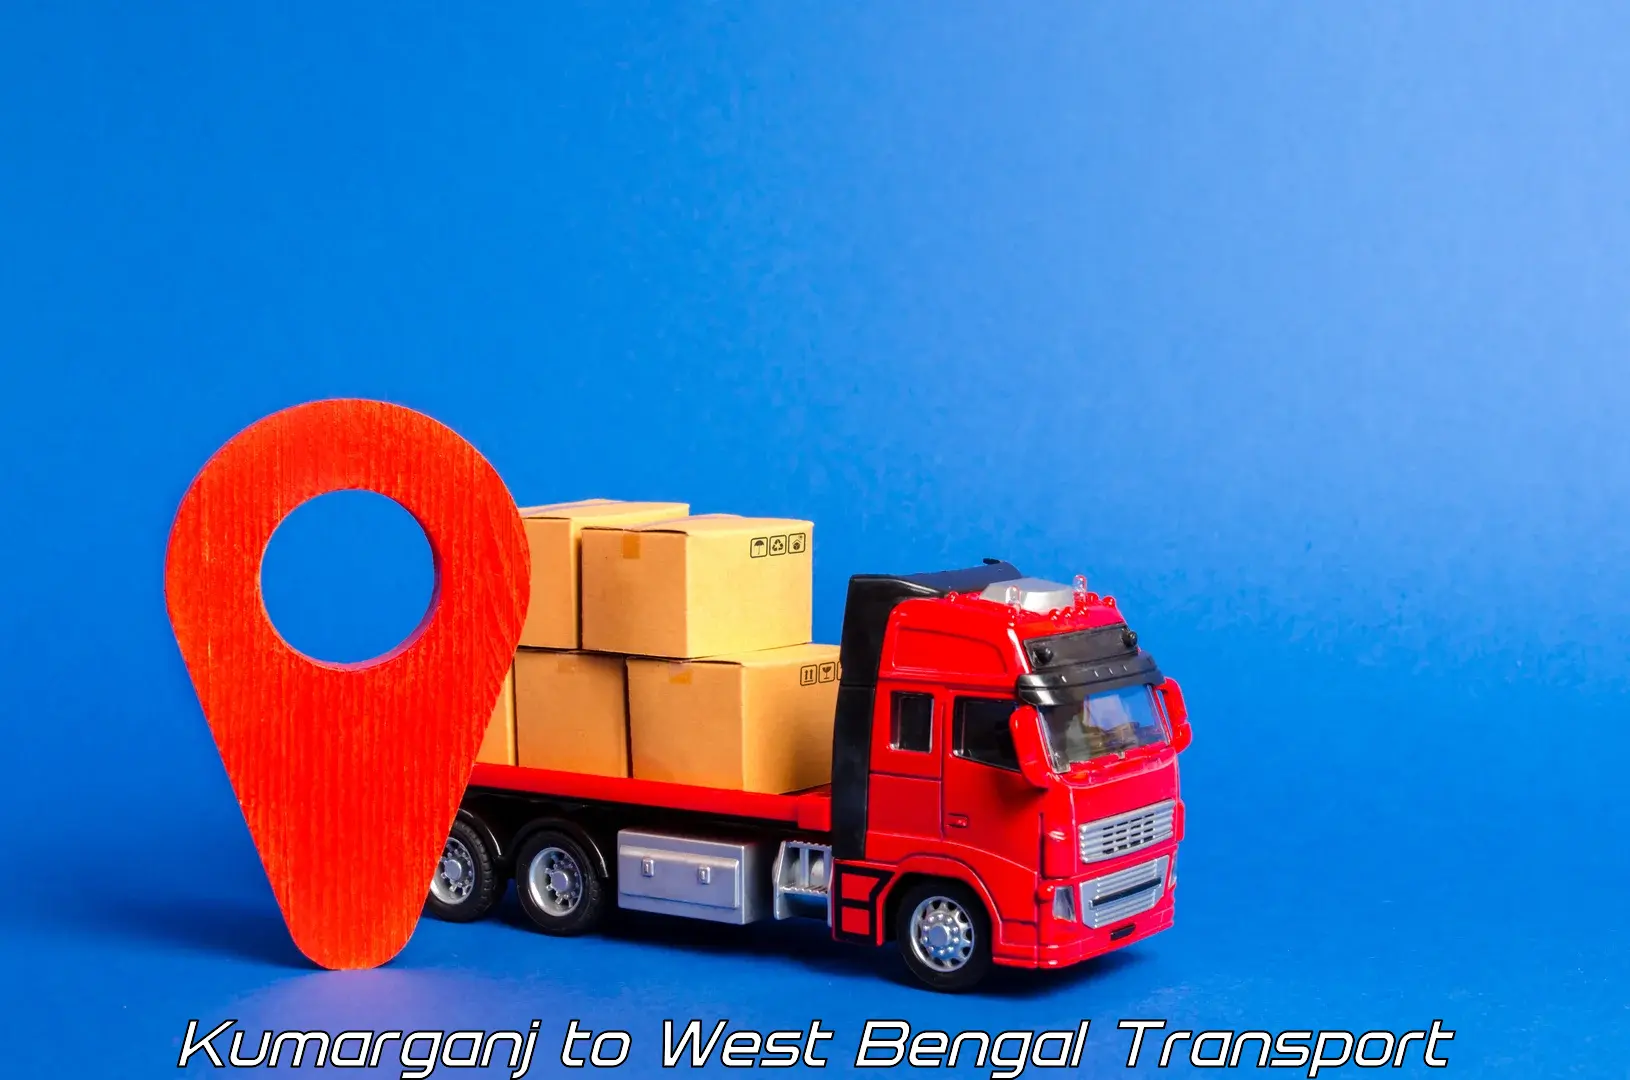 Vehicle transport services Kumarganj to Khardah